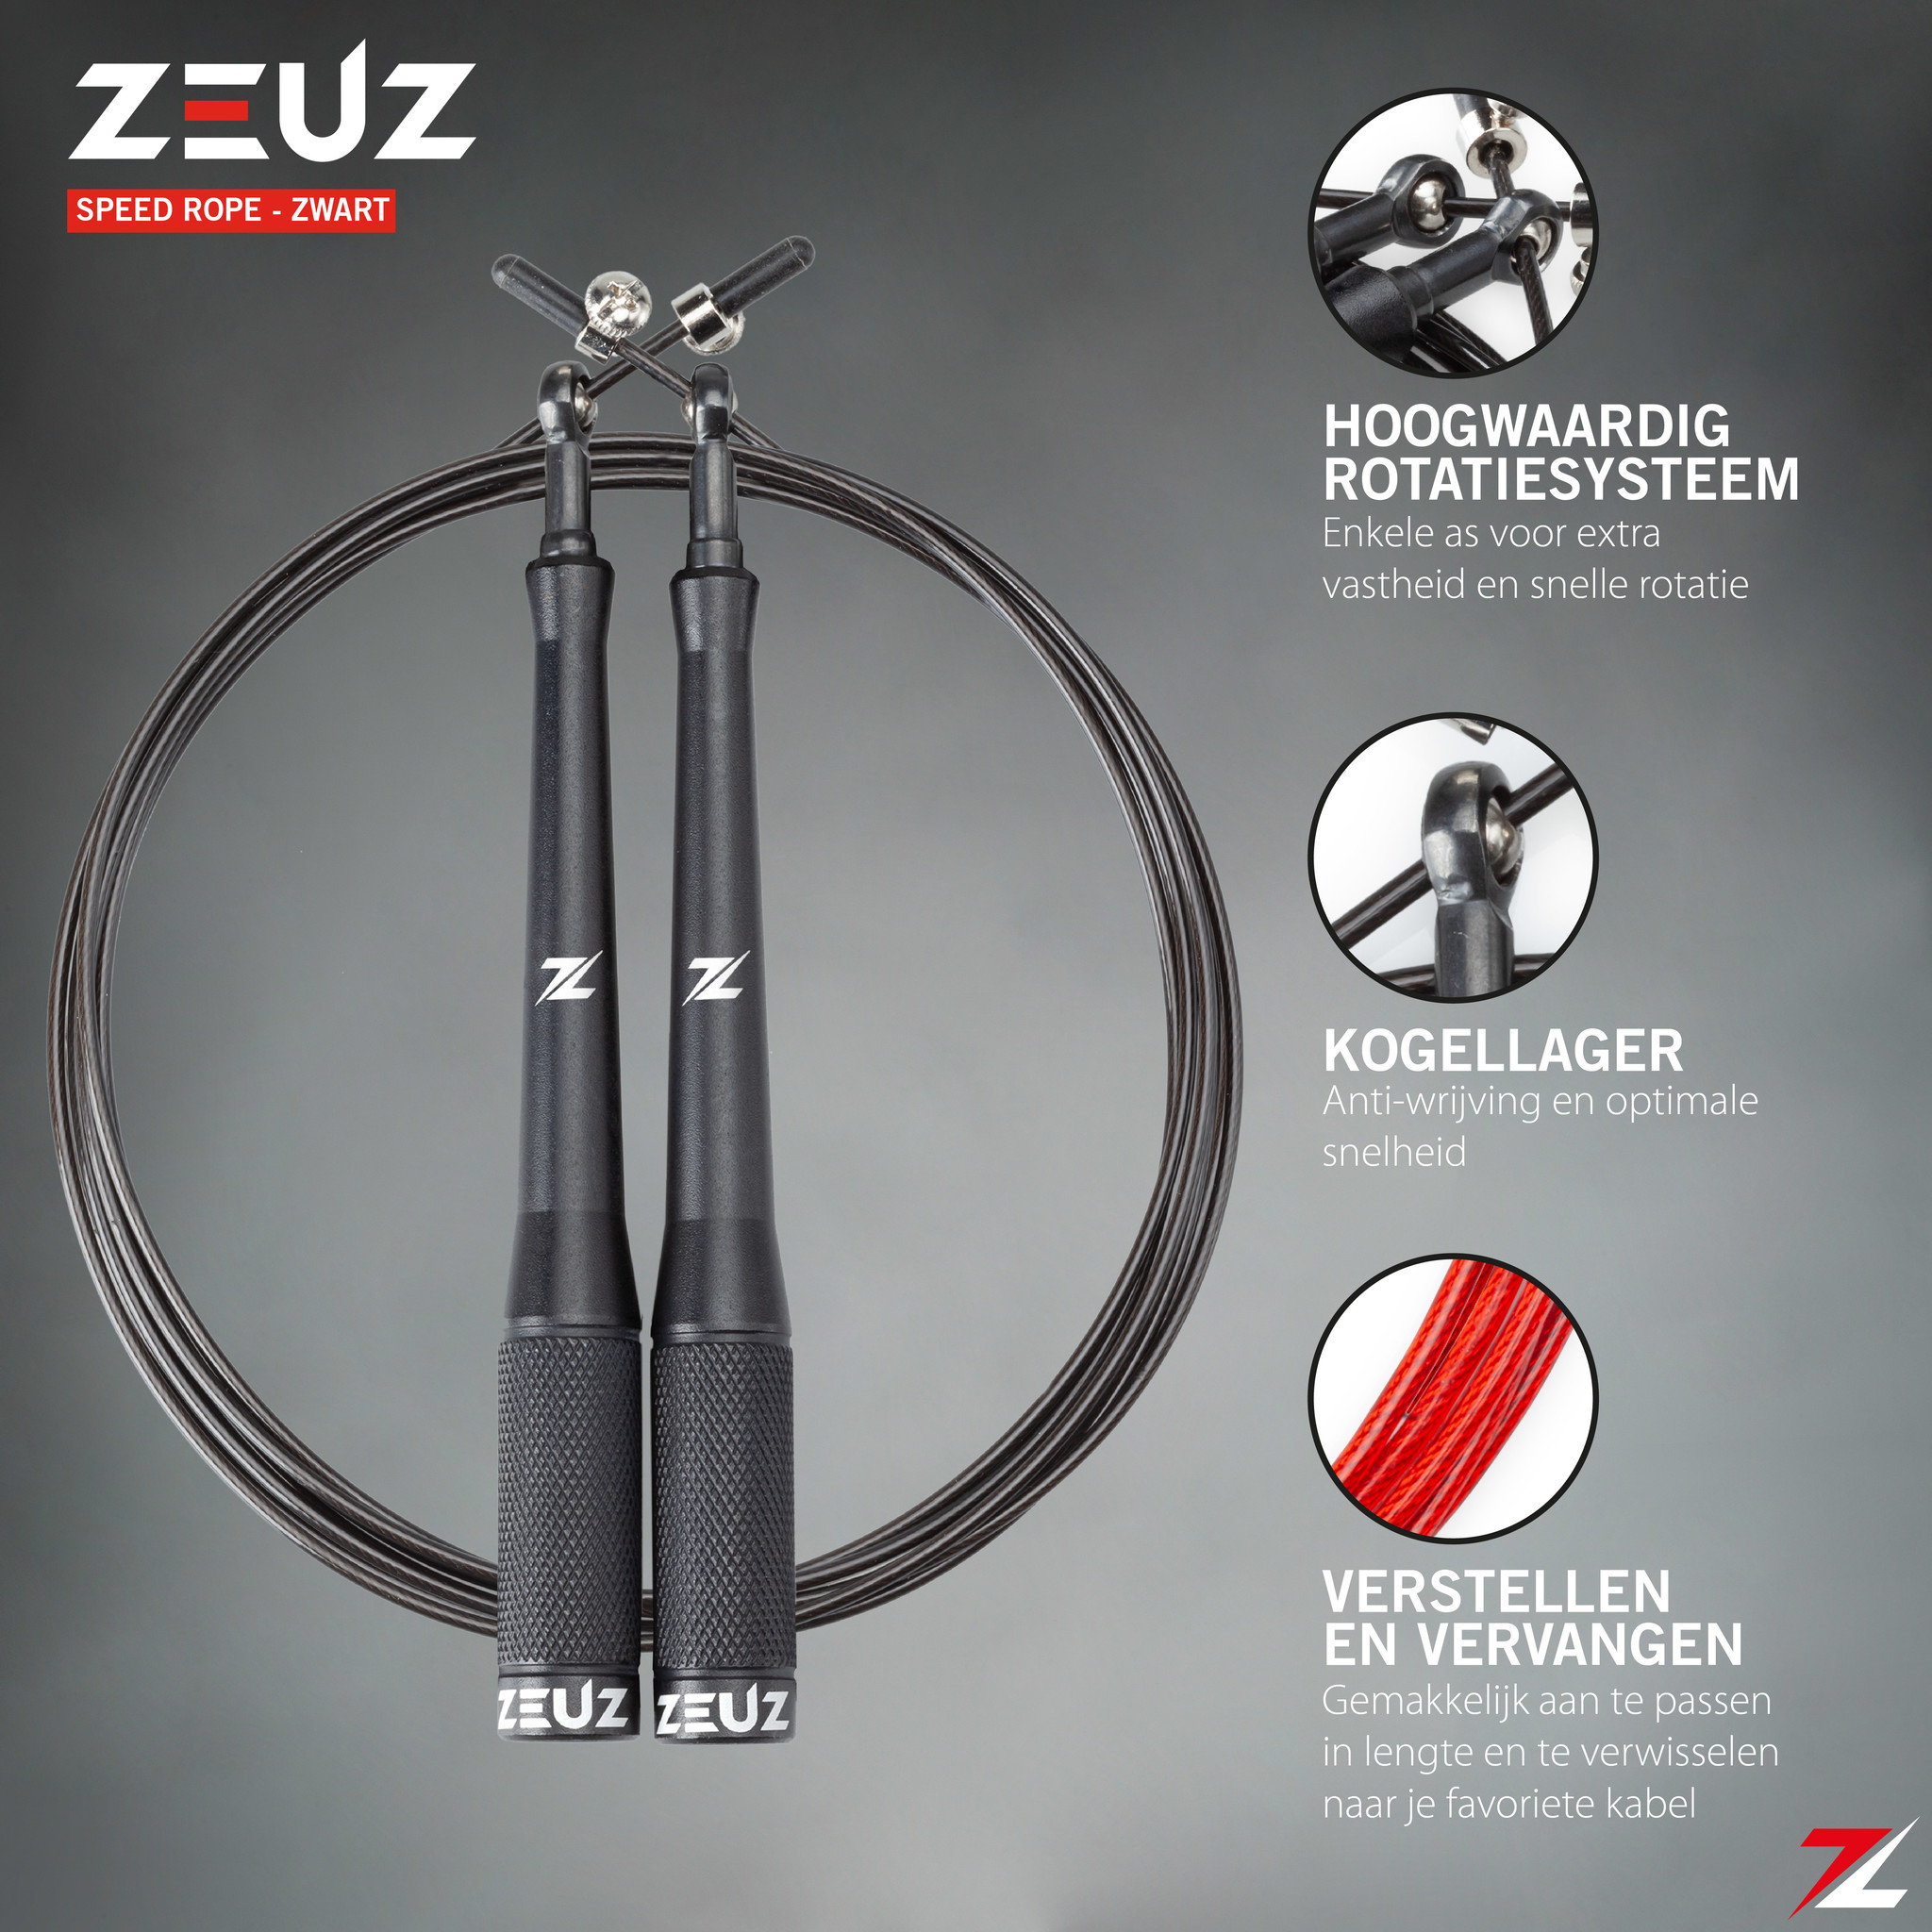 ZEUZ® Professioneel Crossfit & Fitness Springtouw Verstelbaar – Speed Rope – Volwassenen – SR-2 - Zwart - ZEUZ